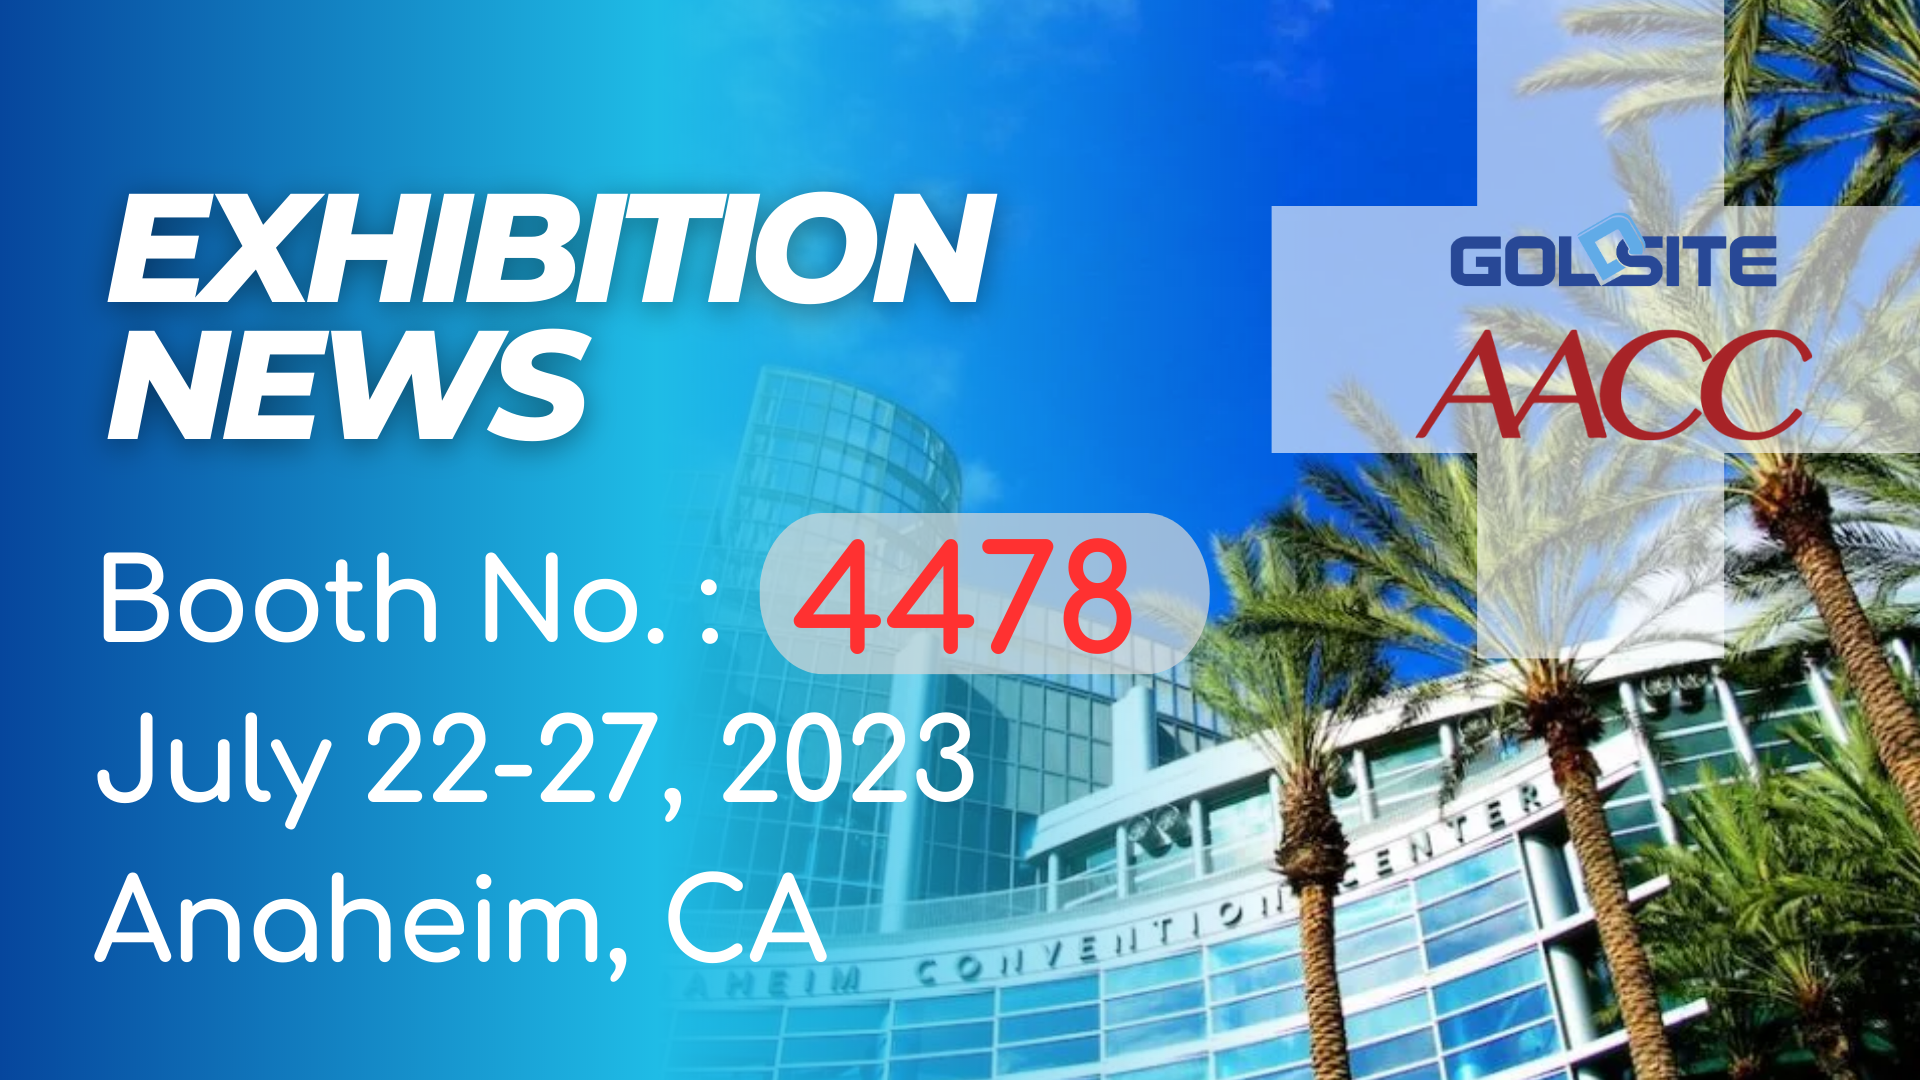 Os próximos eventos: Goldsite para exibir na AACC 2023 em CA!